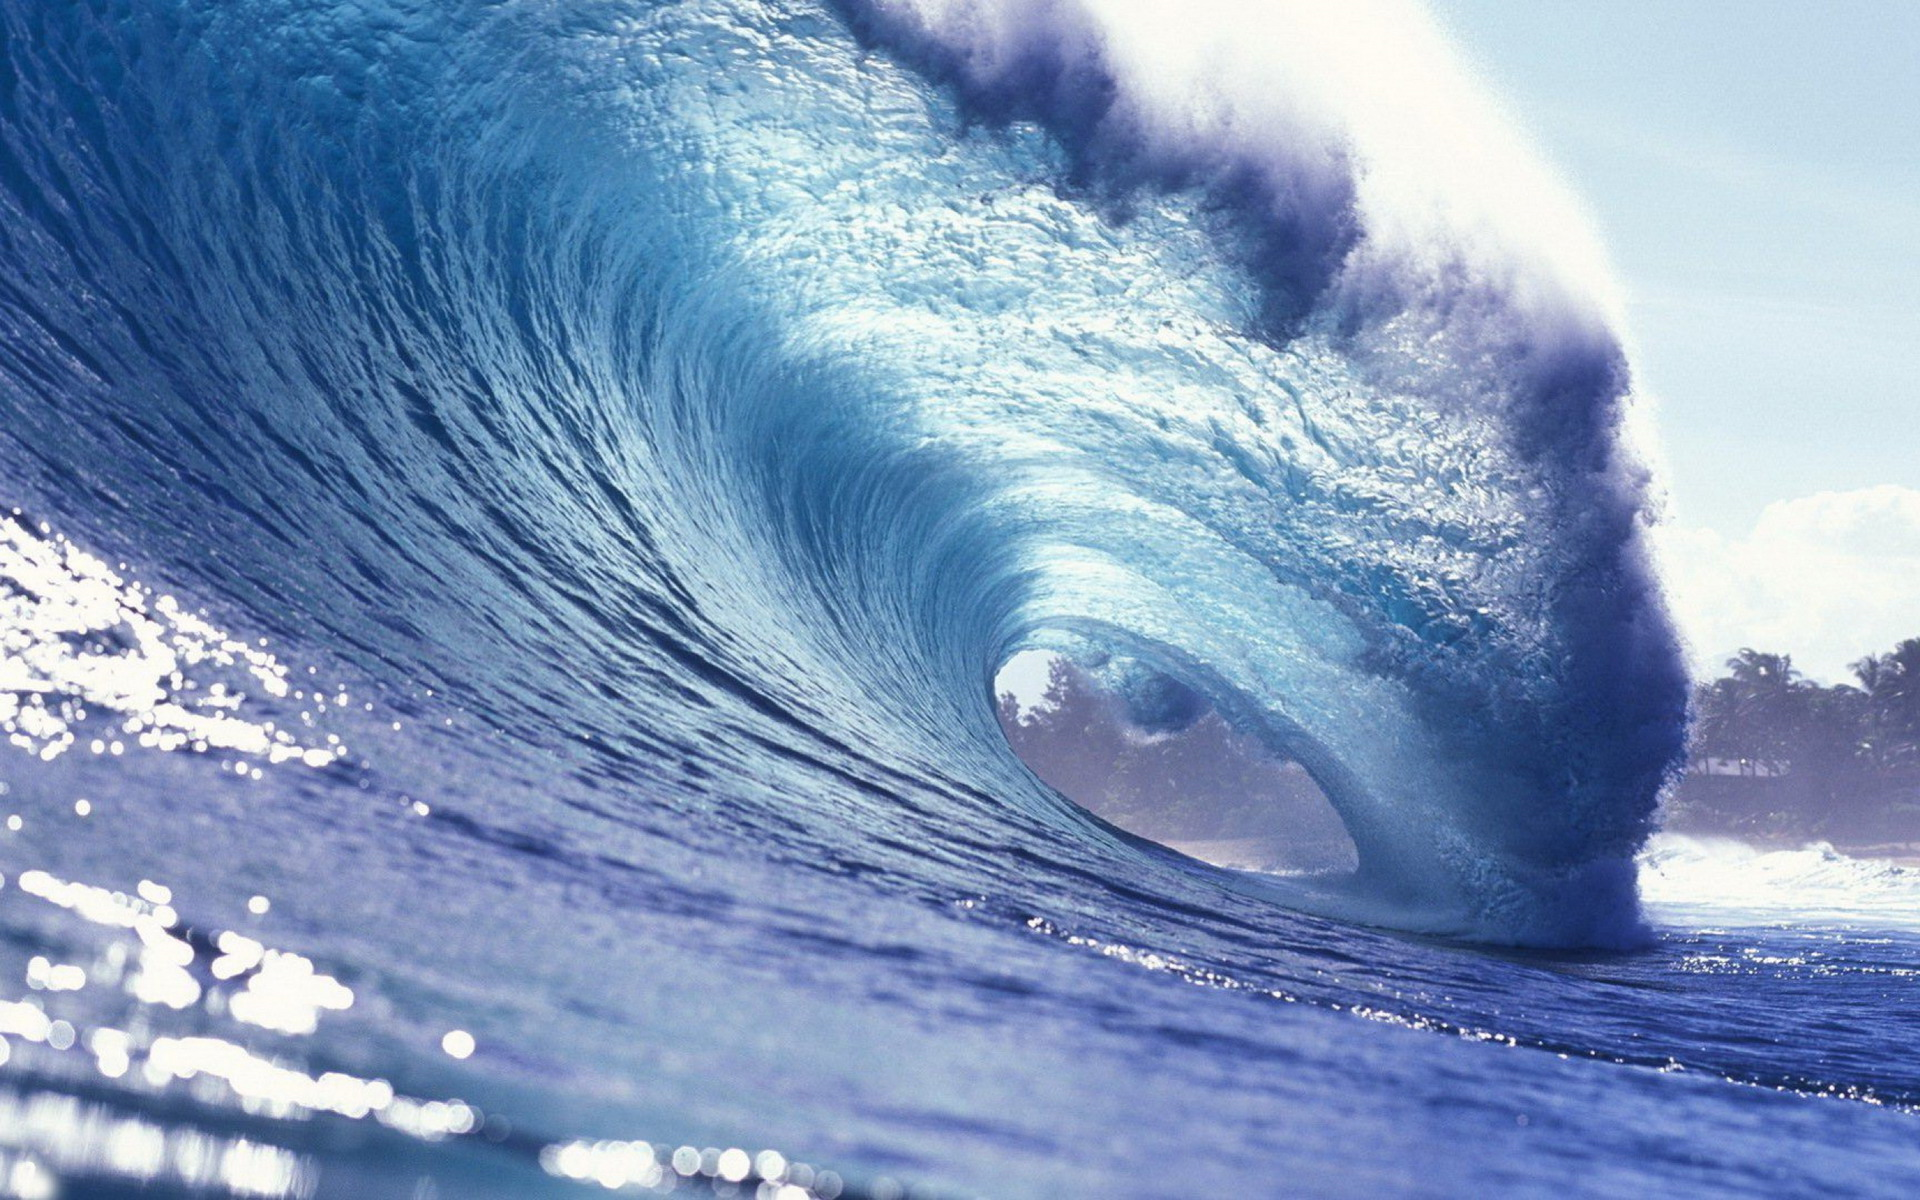 ocean waves wallpaper,wave,wind wave,tide,water,ocean